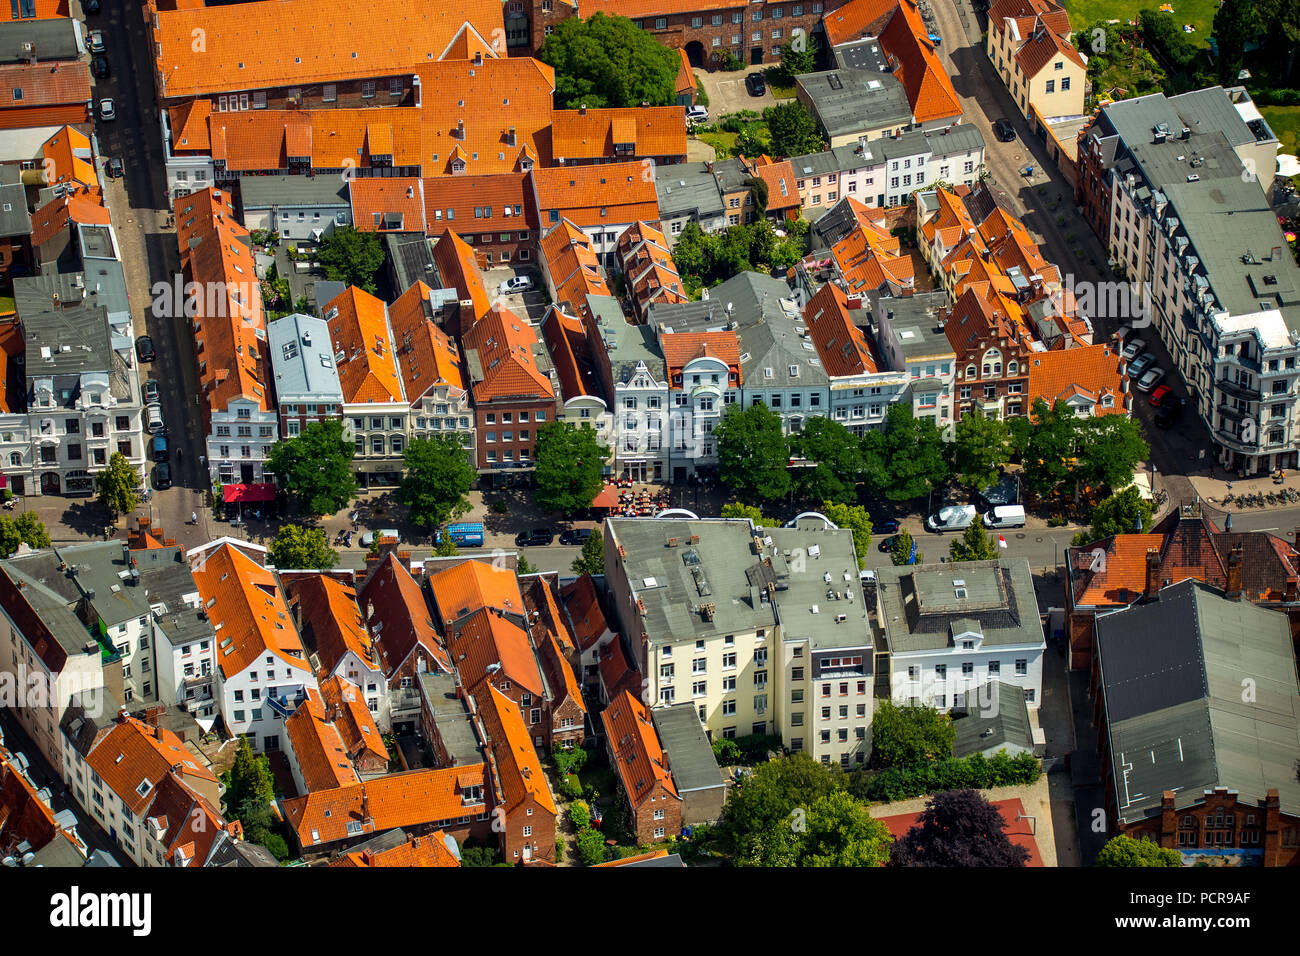 Maisons de ville avec les toits rouges de la vieille ville de Lübeck, Lübeck, baie de Lübeck, ville hanséatique, Schleswig-Holstein, Allemagne Banque D'Images